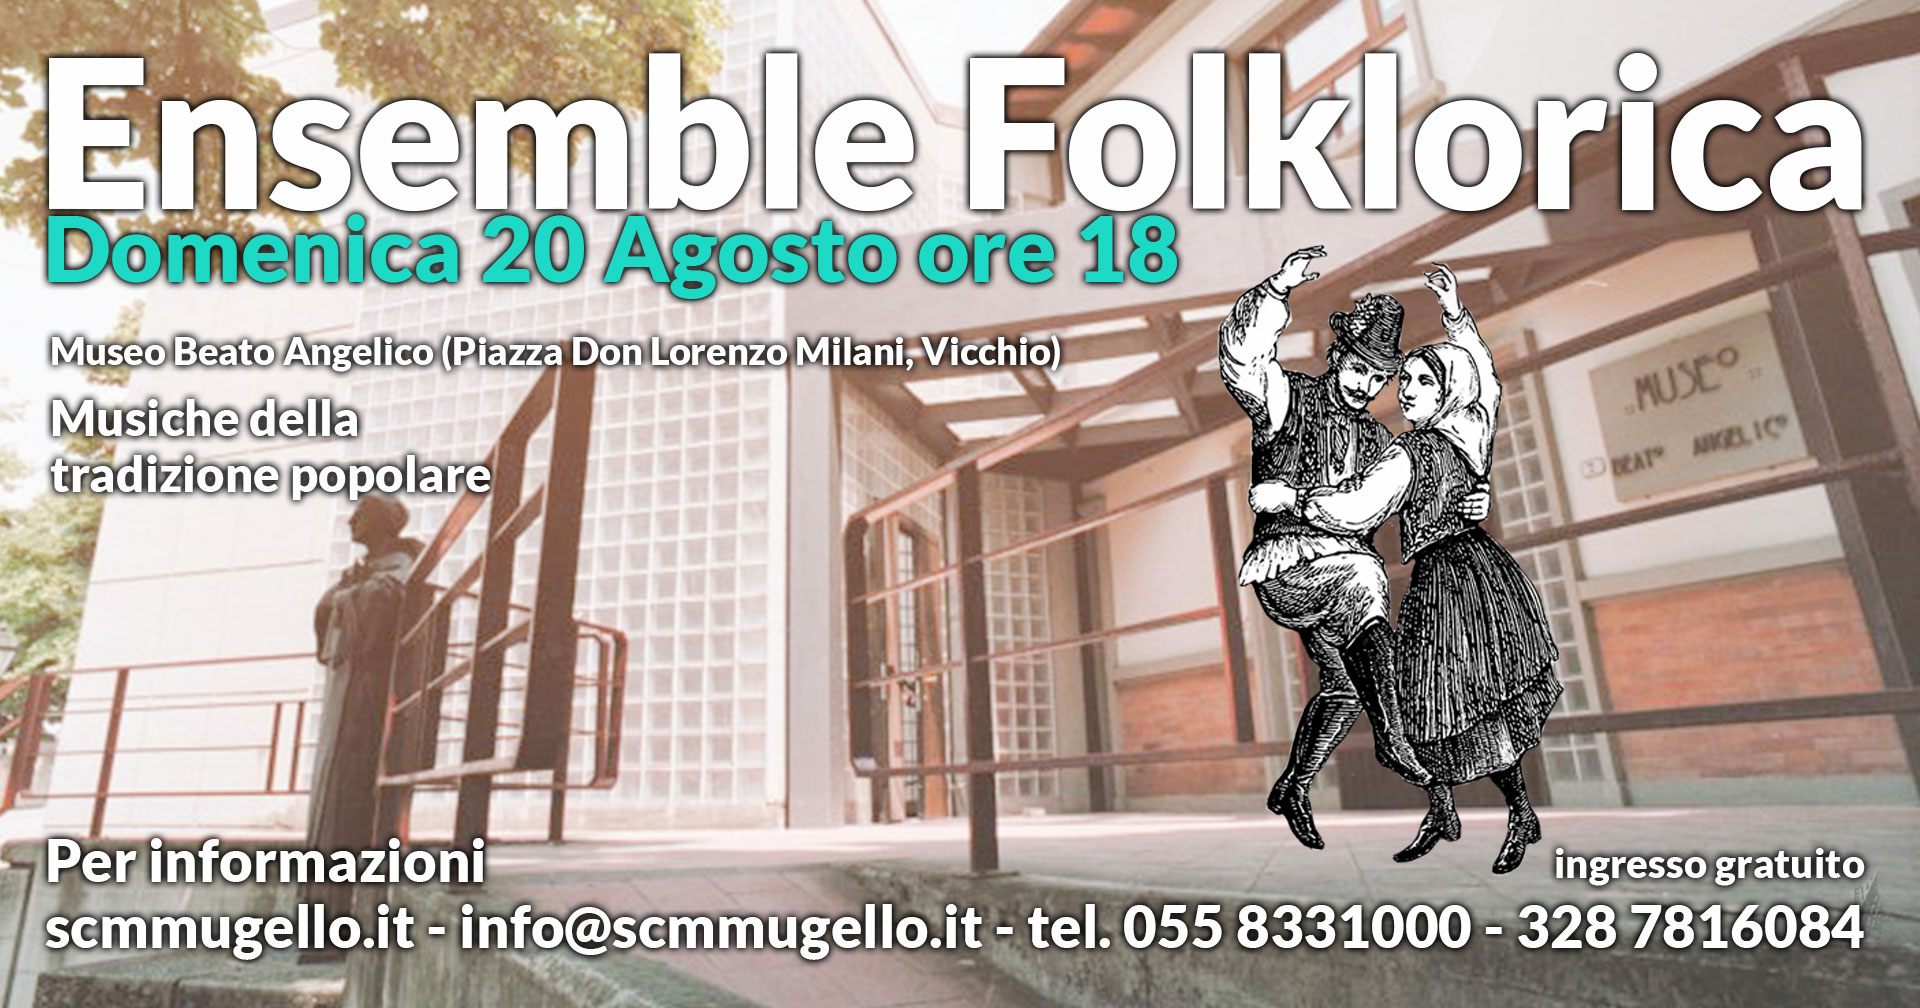 Ensemble Folklorika Museo Beato Angelico Vicchio Domenica 20 Agosto ore 18